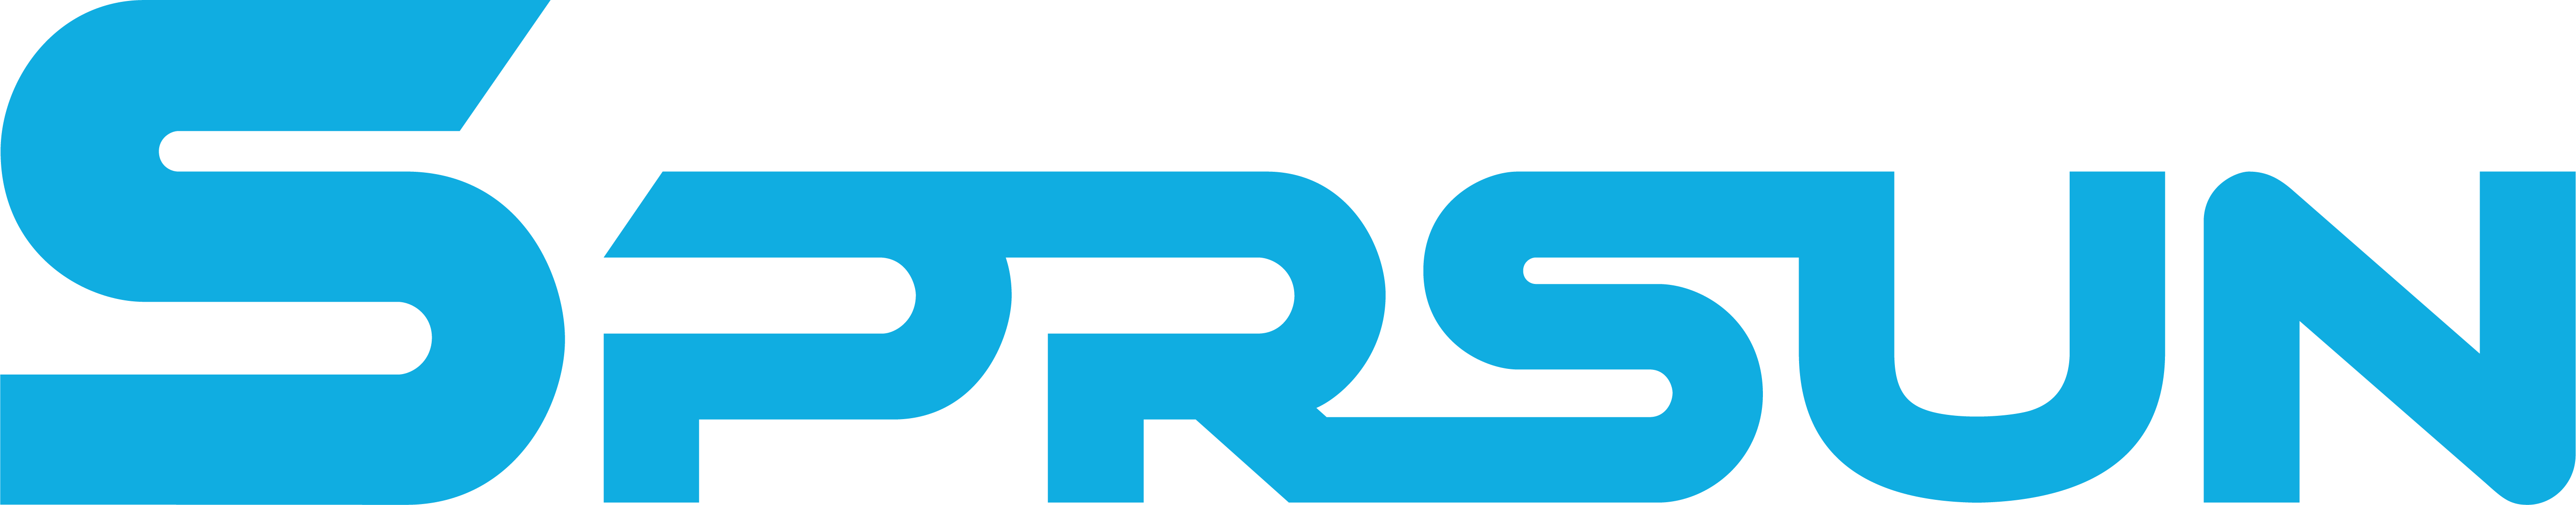 SPRSUN Logo